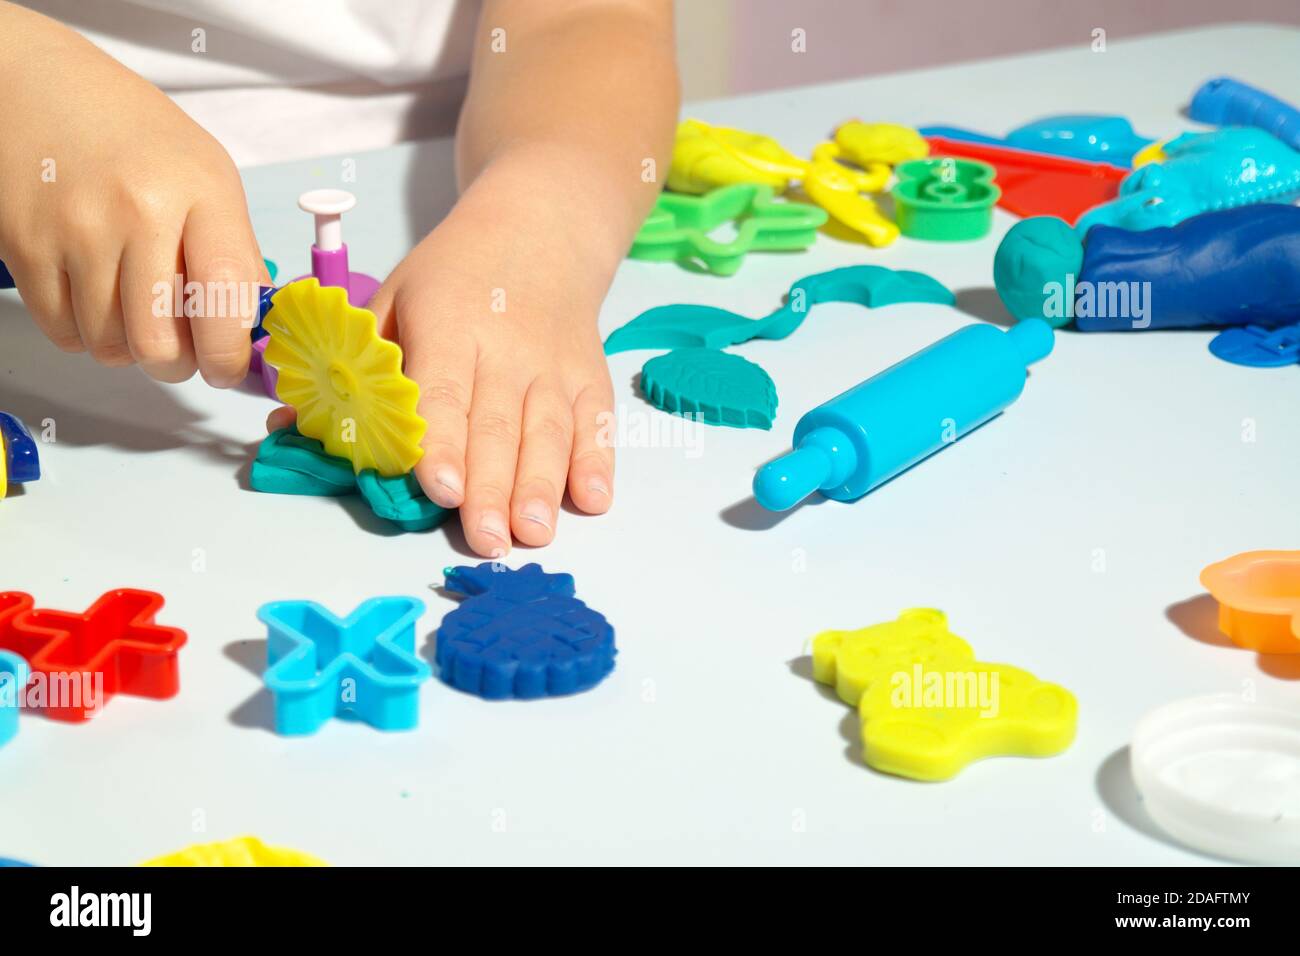 Kind spielt mit Spielteig auf dem blauen Tisch. Viele Spielzeuge auf dem Tisch Formen, Teigwalze und Schere. Glückliches Kind hat Spaß mit Spielzeug. Stockfoto